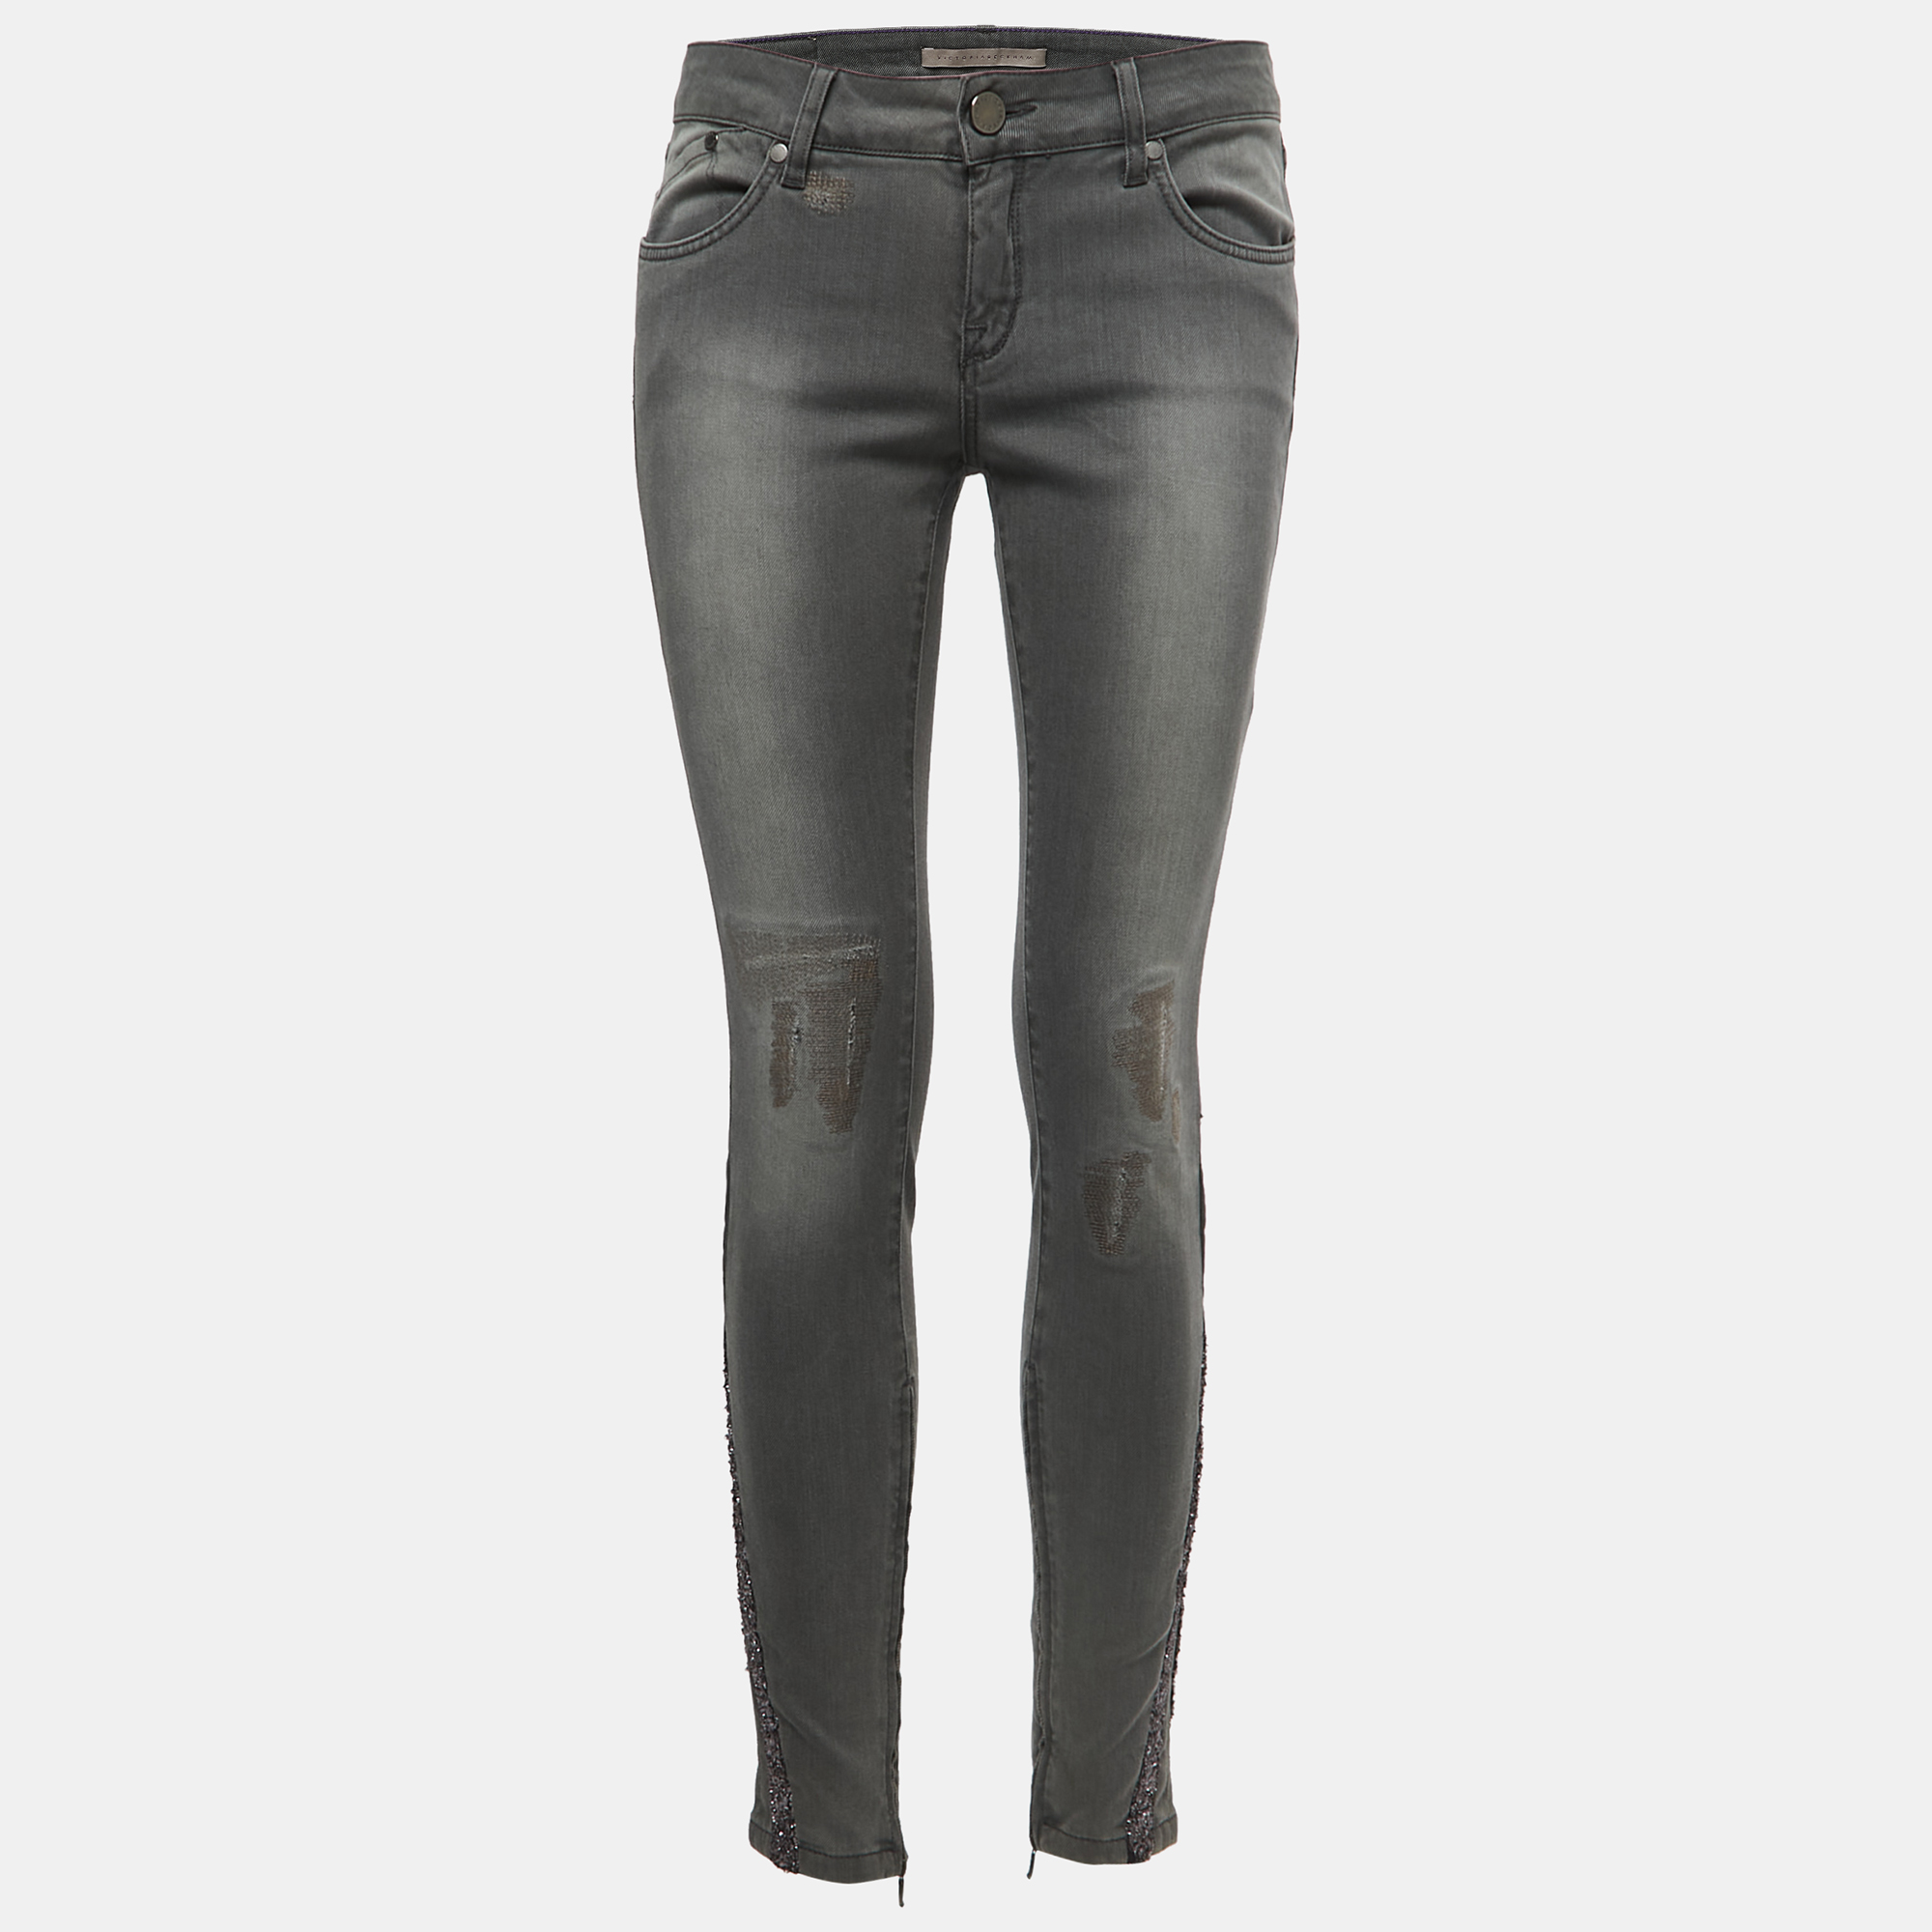 Victoria Beckham Grey Denim Glitter Detail Skinny Jeans M Waist 28